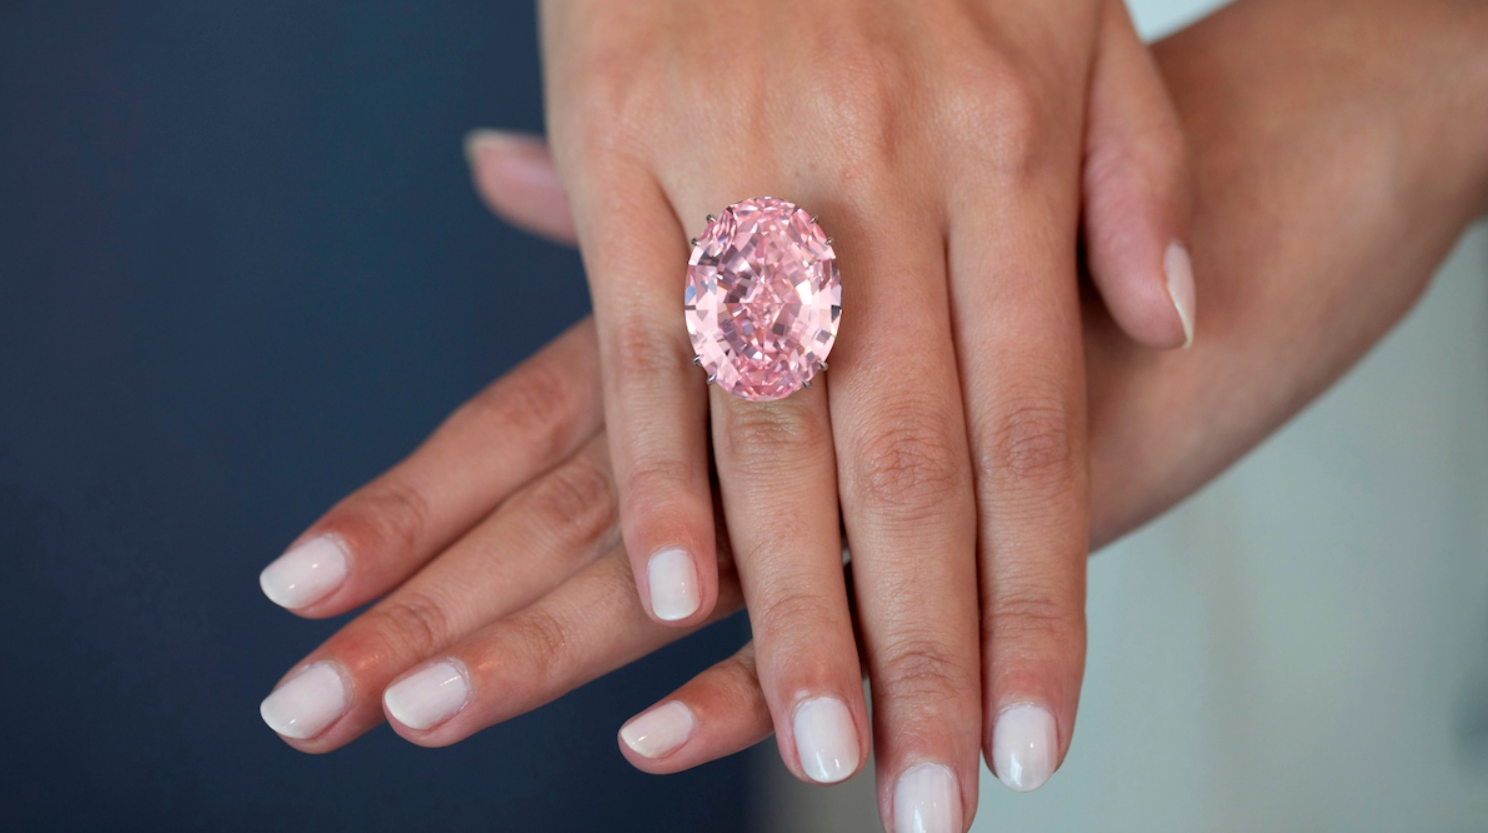 Chiêm ngưỡng những chiếc nhẫn kim cương đắt nhất thế giới: Giá trị liên thành, đẹp không tỳ vết, có tiền chưa chắc đã mua được - Ảnh 2.